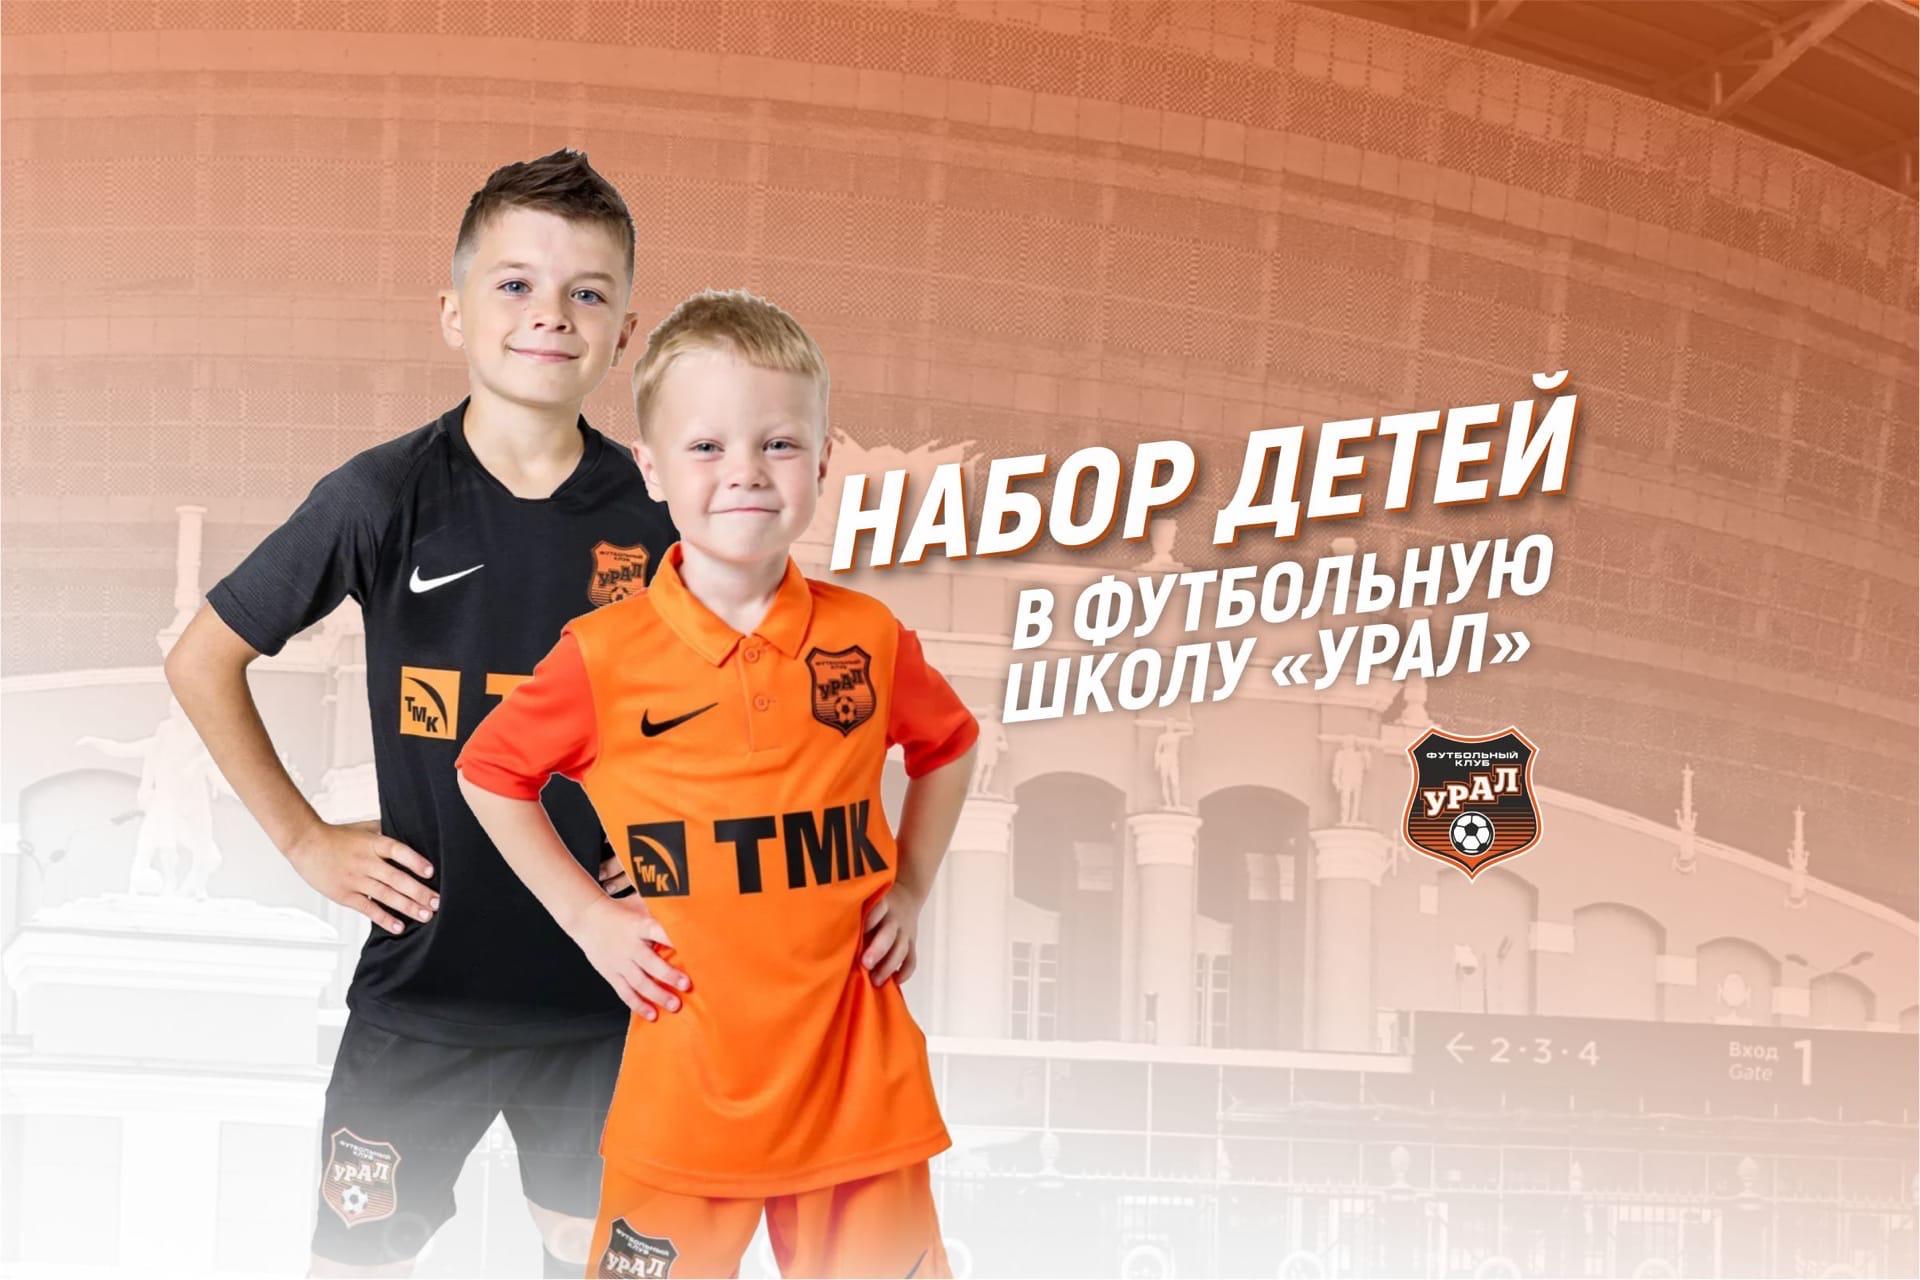 Футбольная школа «Урал» ведёт набор детей на бюджетное обучение